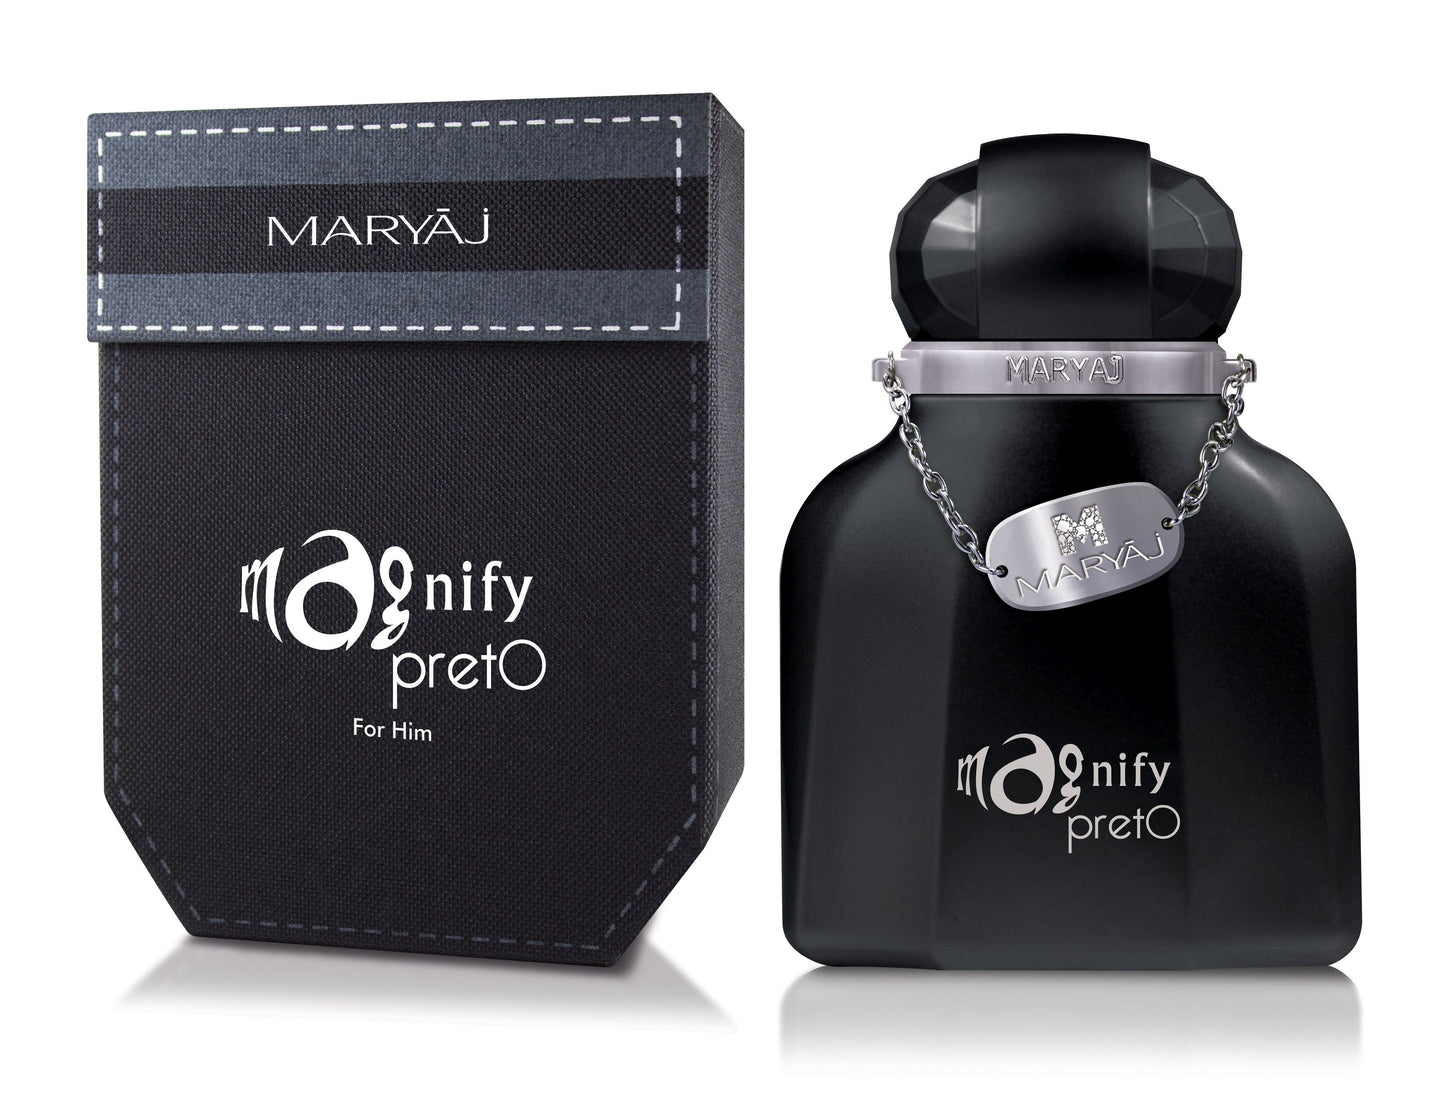 MAGNIFY PRETO Eau De Parfum For Men, 100 ml